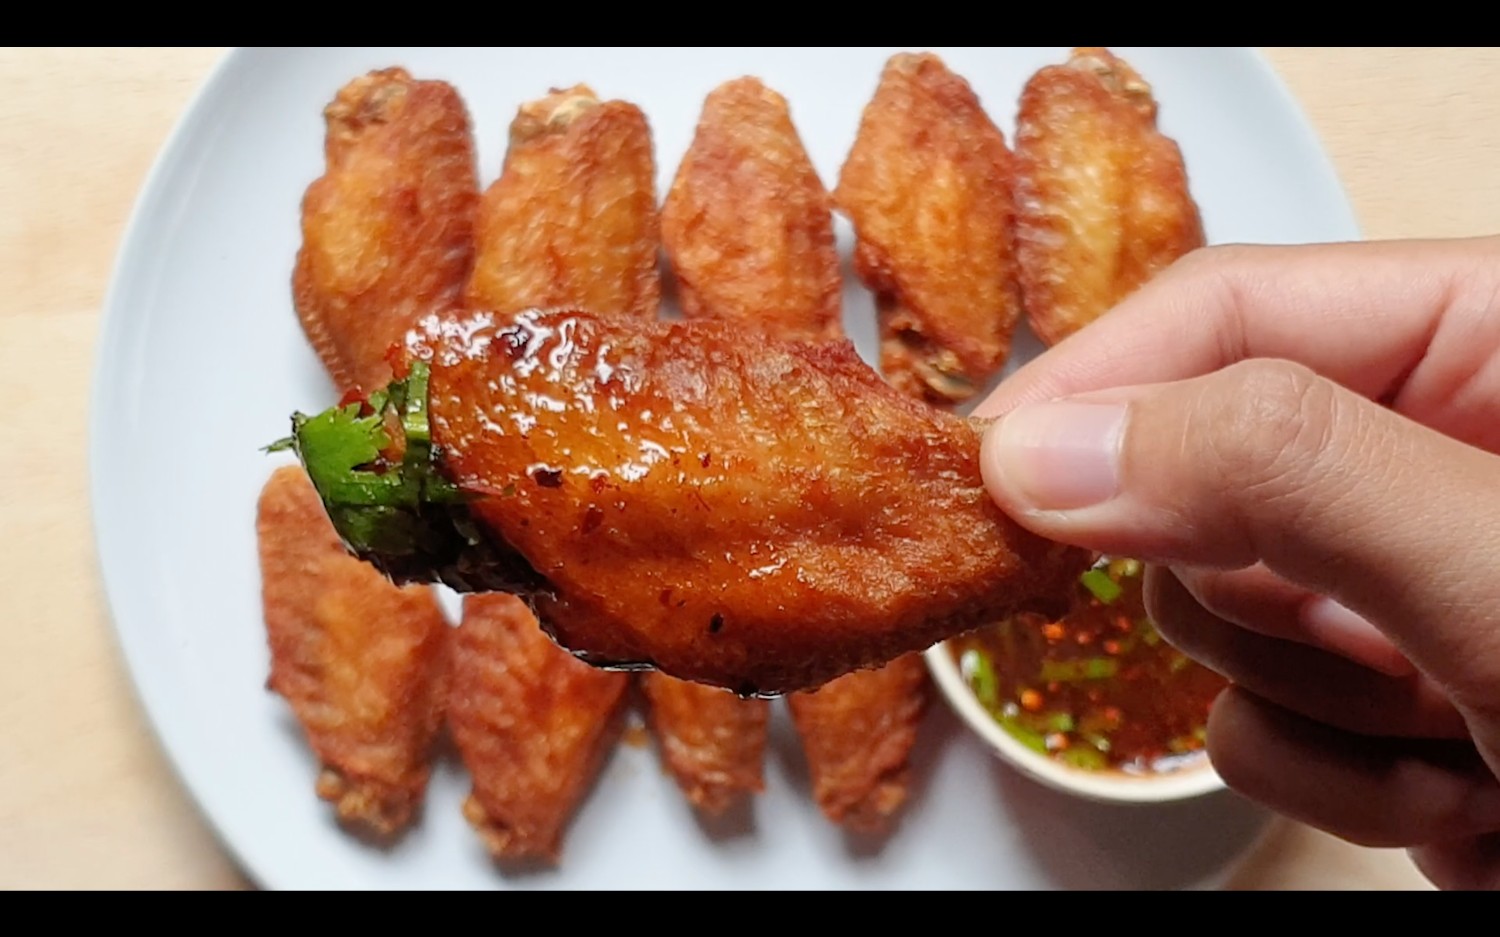 ปีกไก่ทอดน้ำปลา เมนูทำง่าย เครื่องปรุงน้อย อร่อยยกนิ้ว - Mai's Kitchen - Pantip